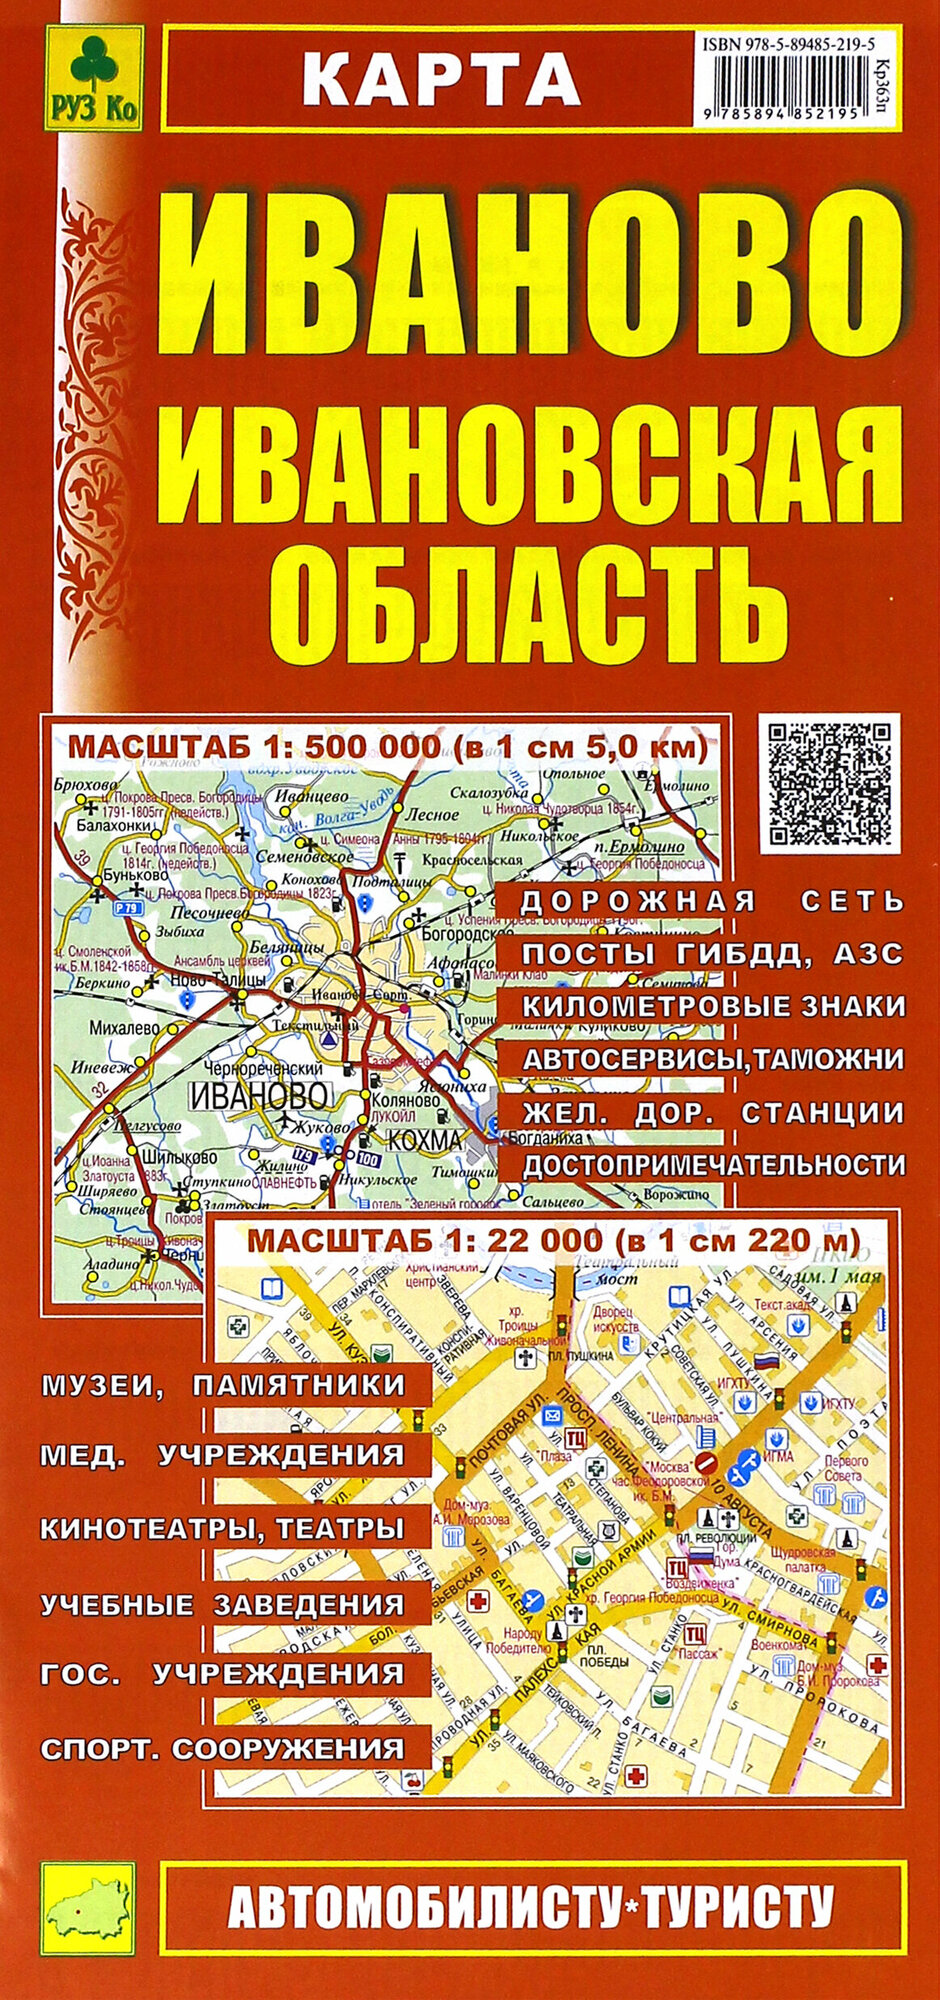 Карта. Иваново. Ивановская область (1:500 000) (1:22 000) - фото №2